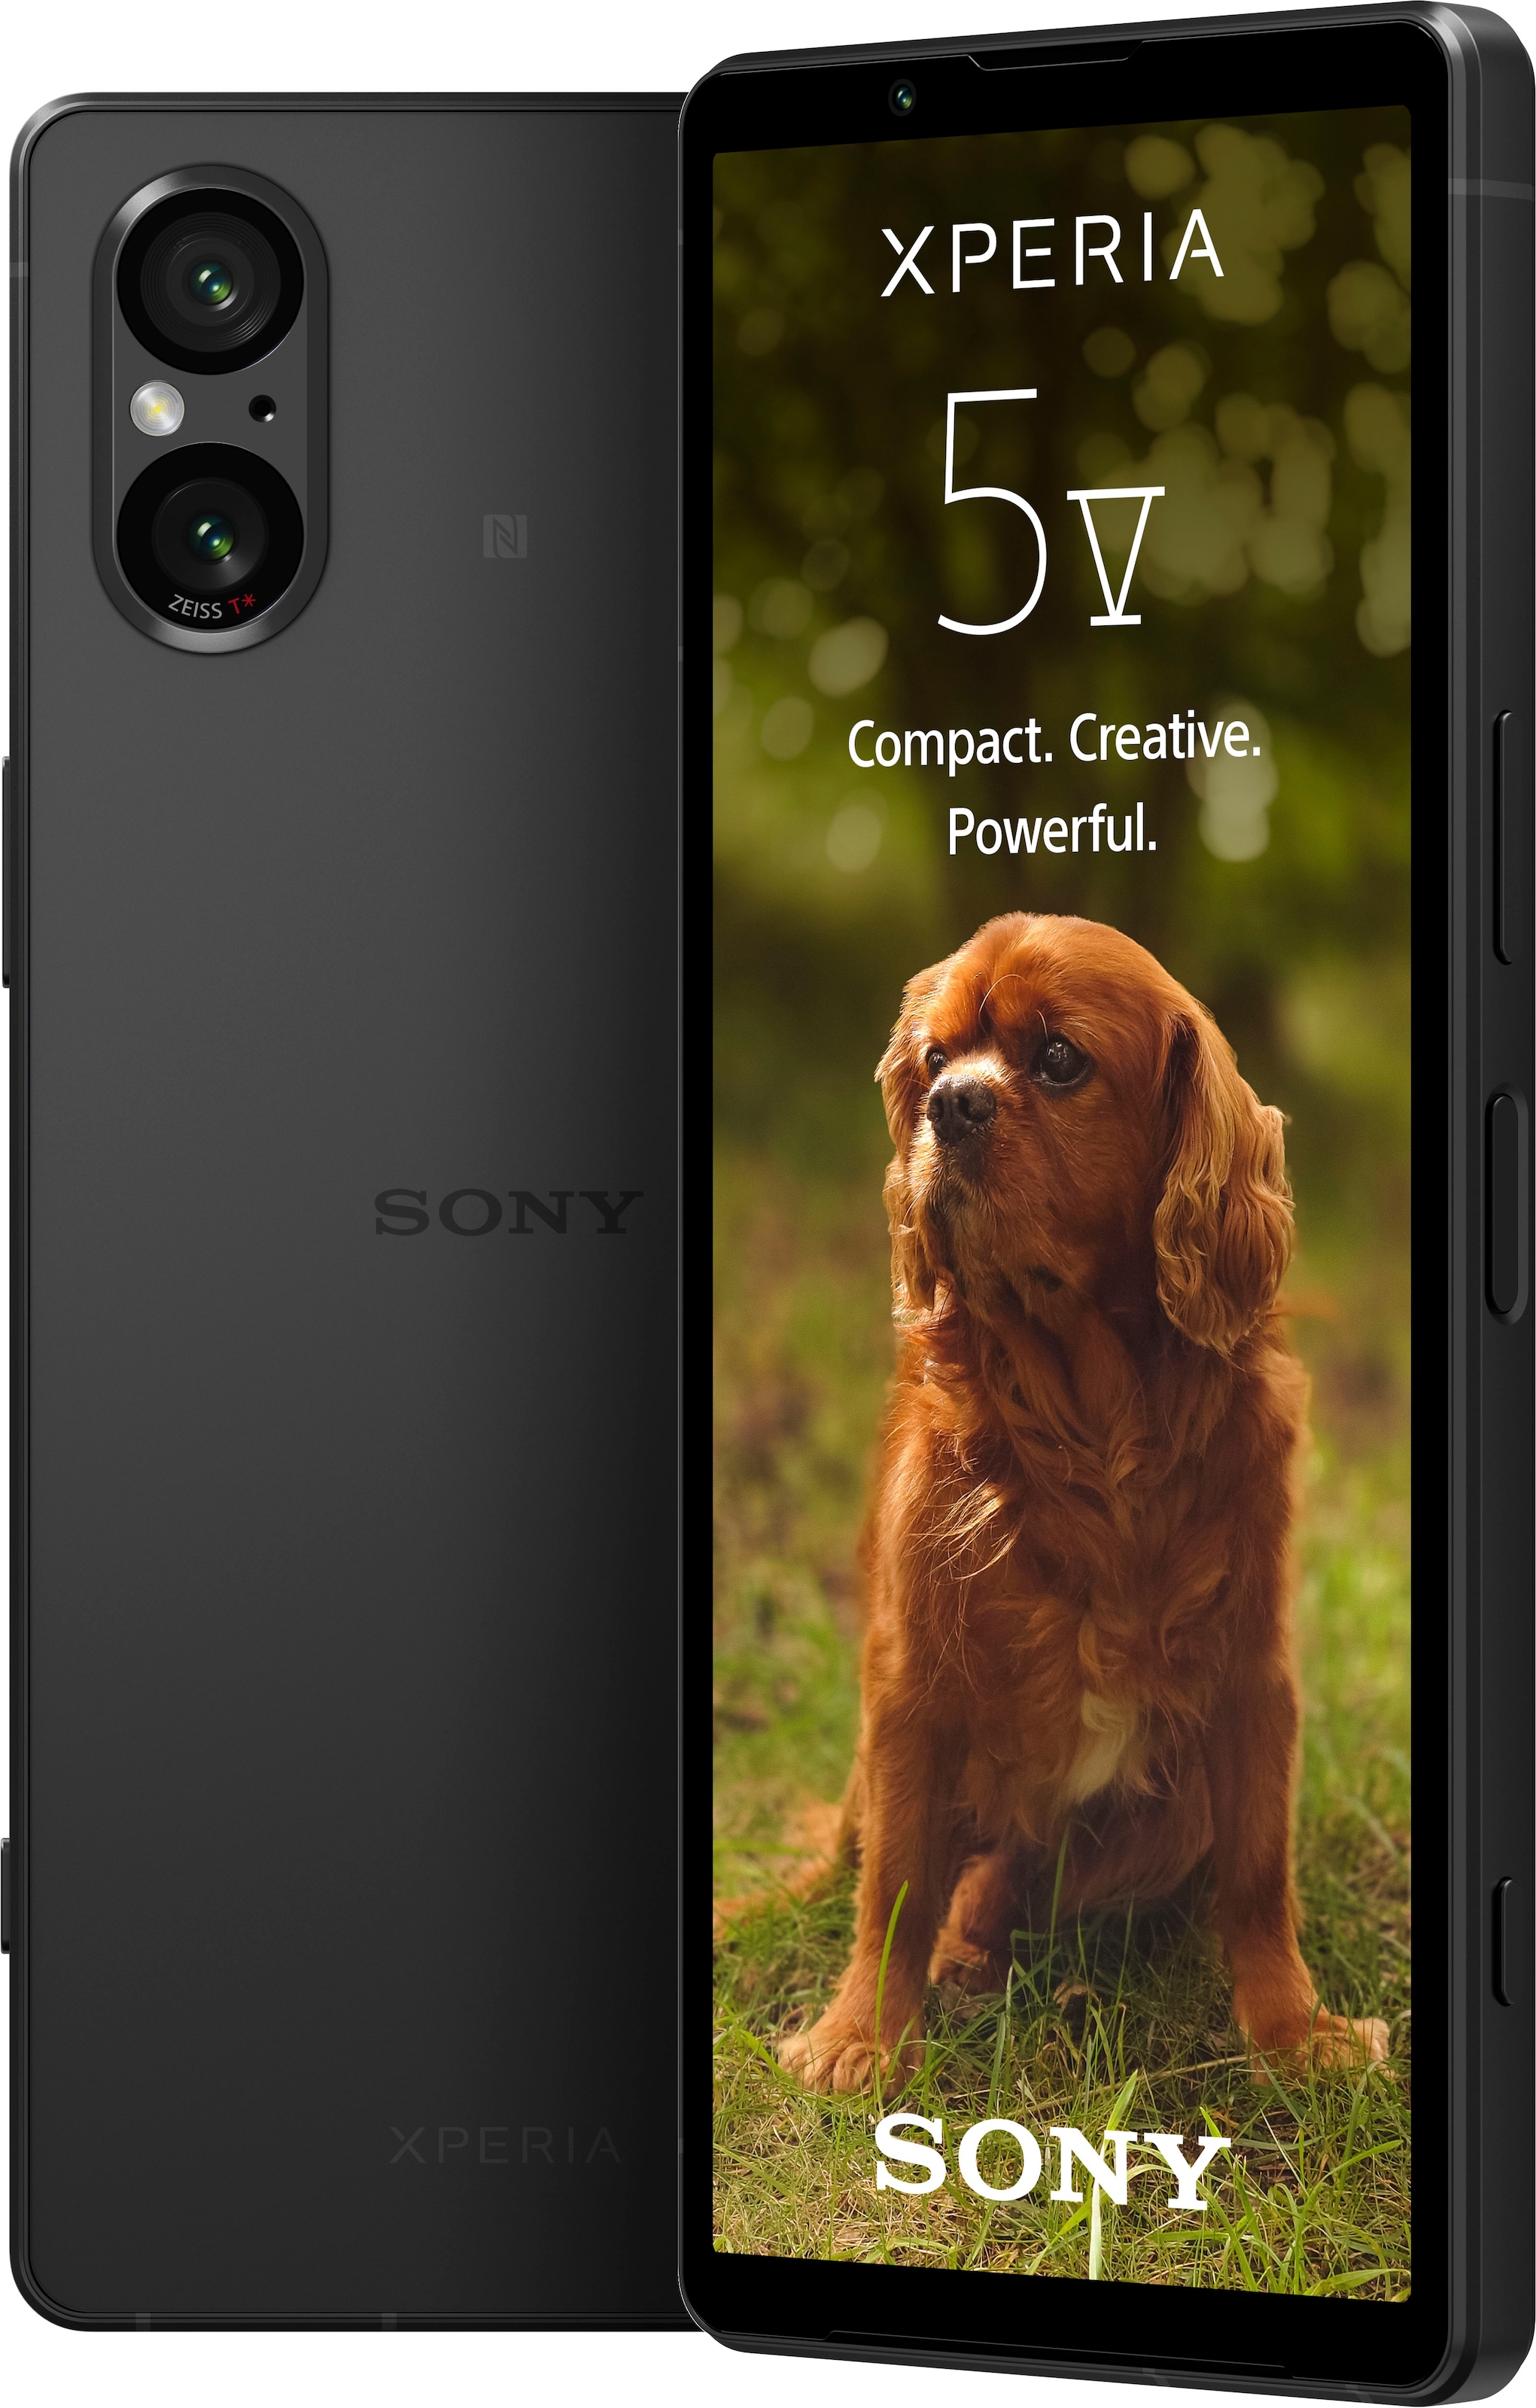 Sony Smartphone »XPERIA 5V«, schwarz, 15,49 cm/6,1 Zoll, 128 GB  Speicherplatz, 12 MP Kamera jetzt bei OTTO | alle Smartphones